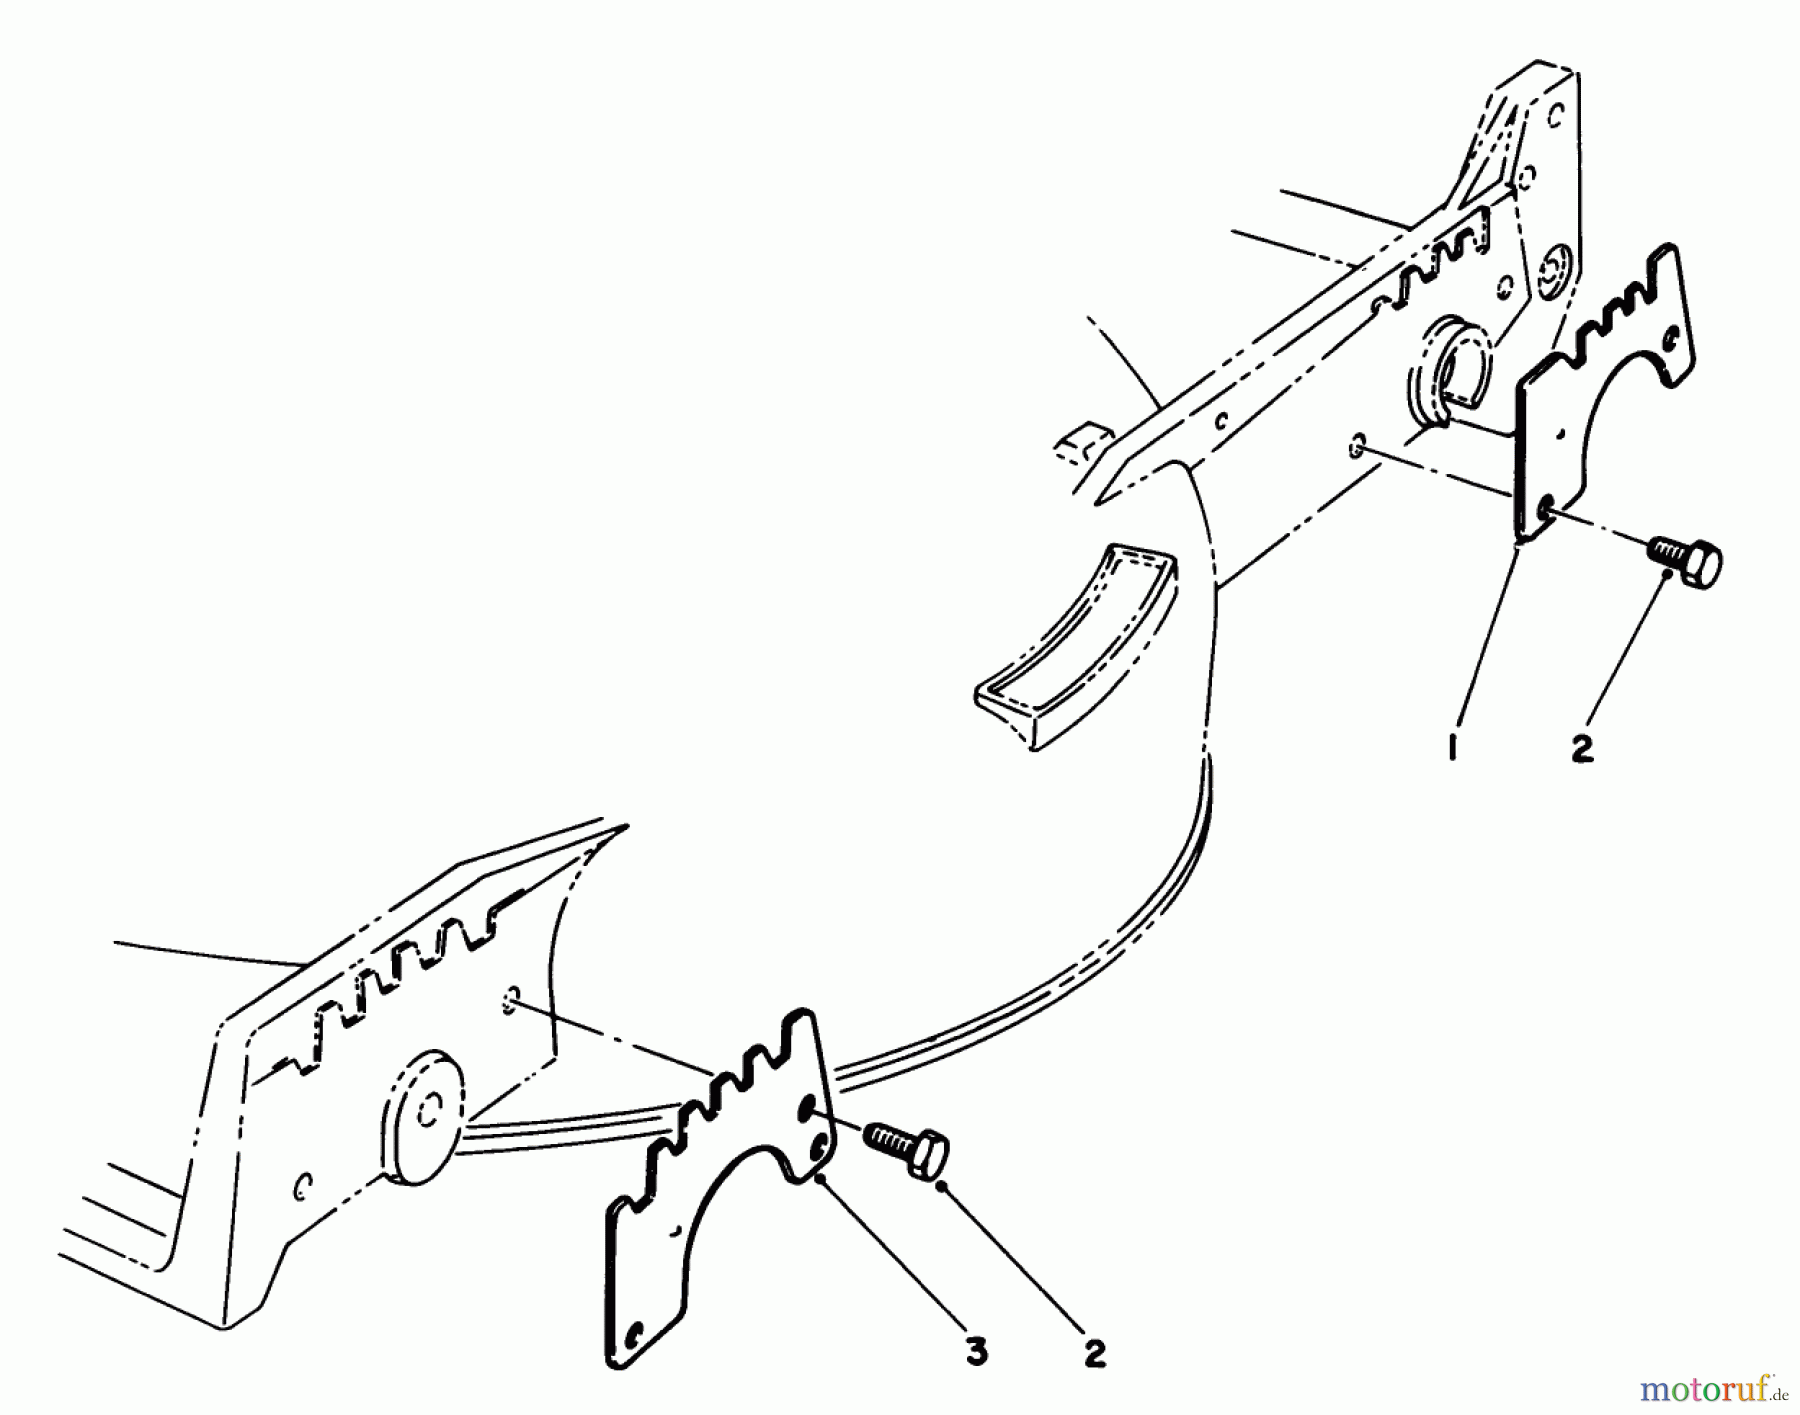  Toro Neu Mowers, Walk-Behind Seite 1 20628C - Toro Lawnmower, 1987 (7000001-7999999) WEAR PLATE KIT NO. 49-4080 (OPTIONAL)